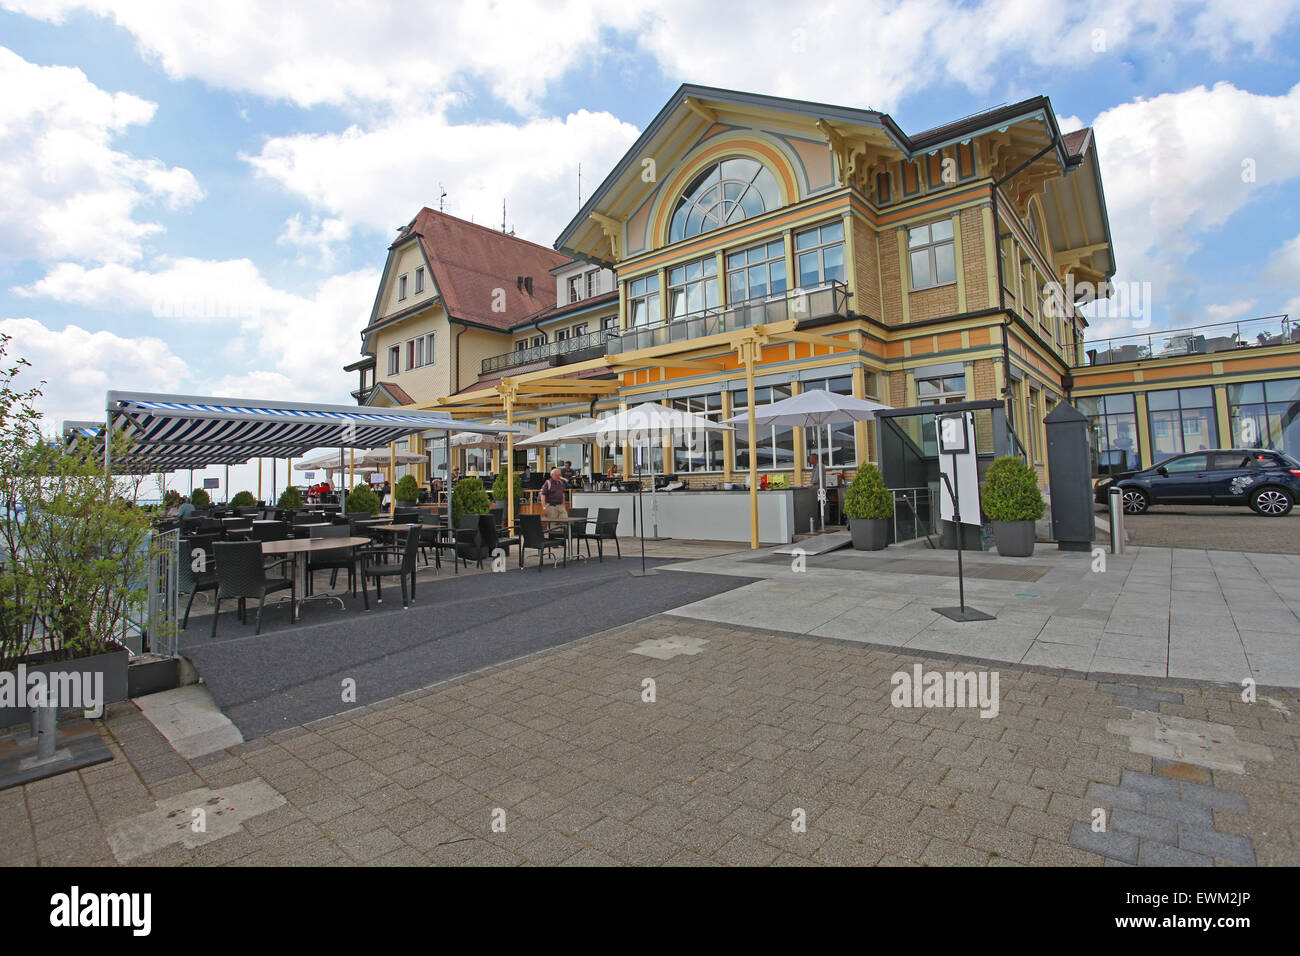 Uto Klum Hotel and restaurant at the summit of Uetliberg Stock Photo